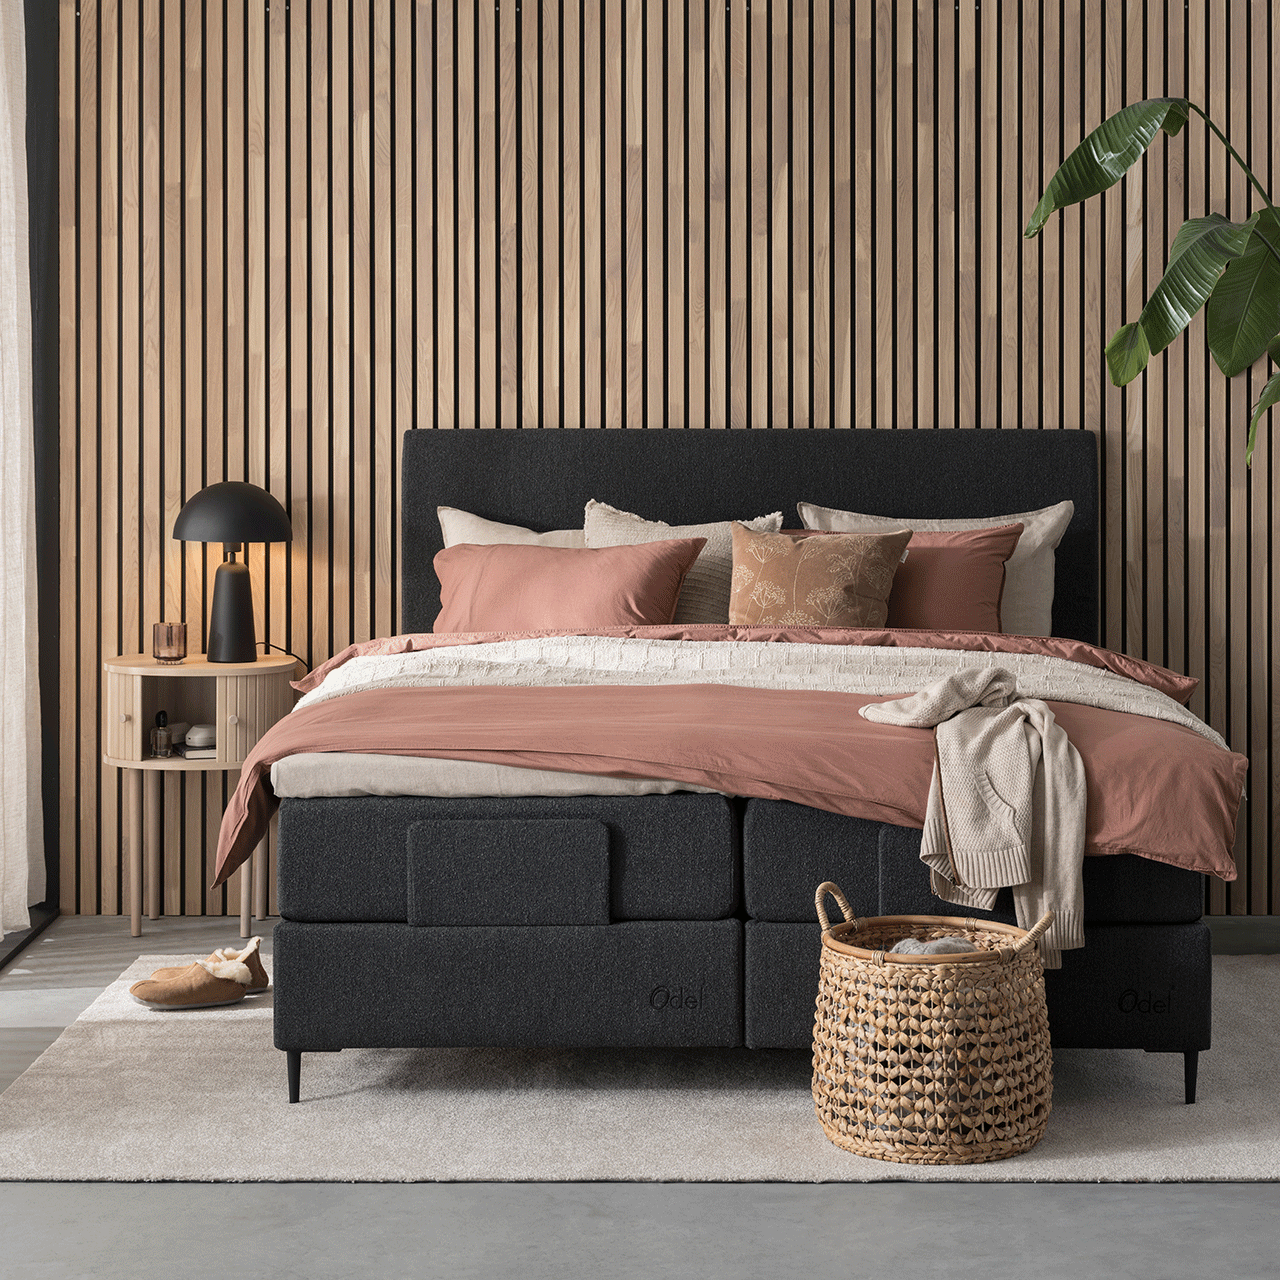 Odel Tind regulerbar seng fra Fagmøbler